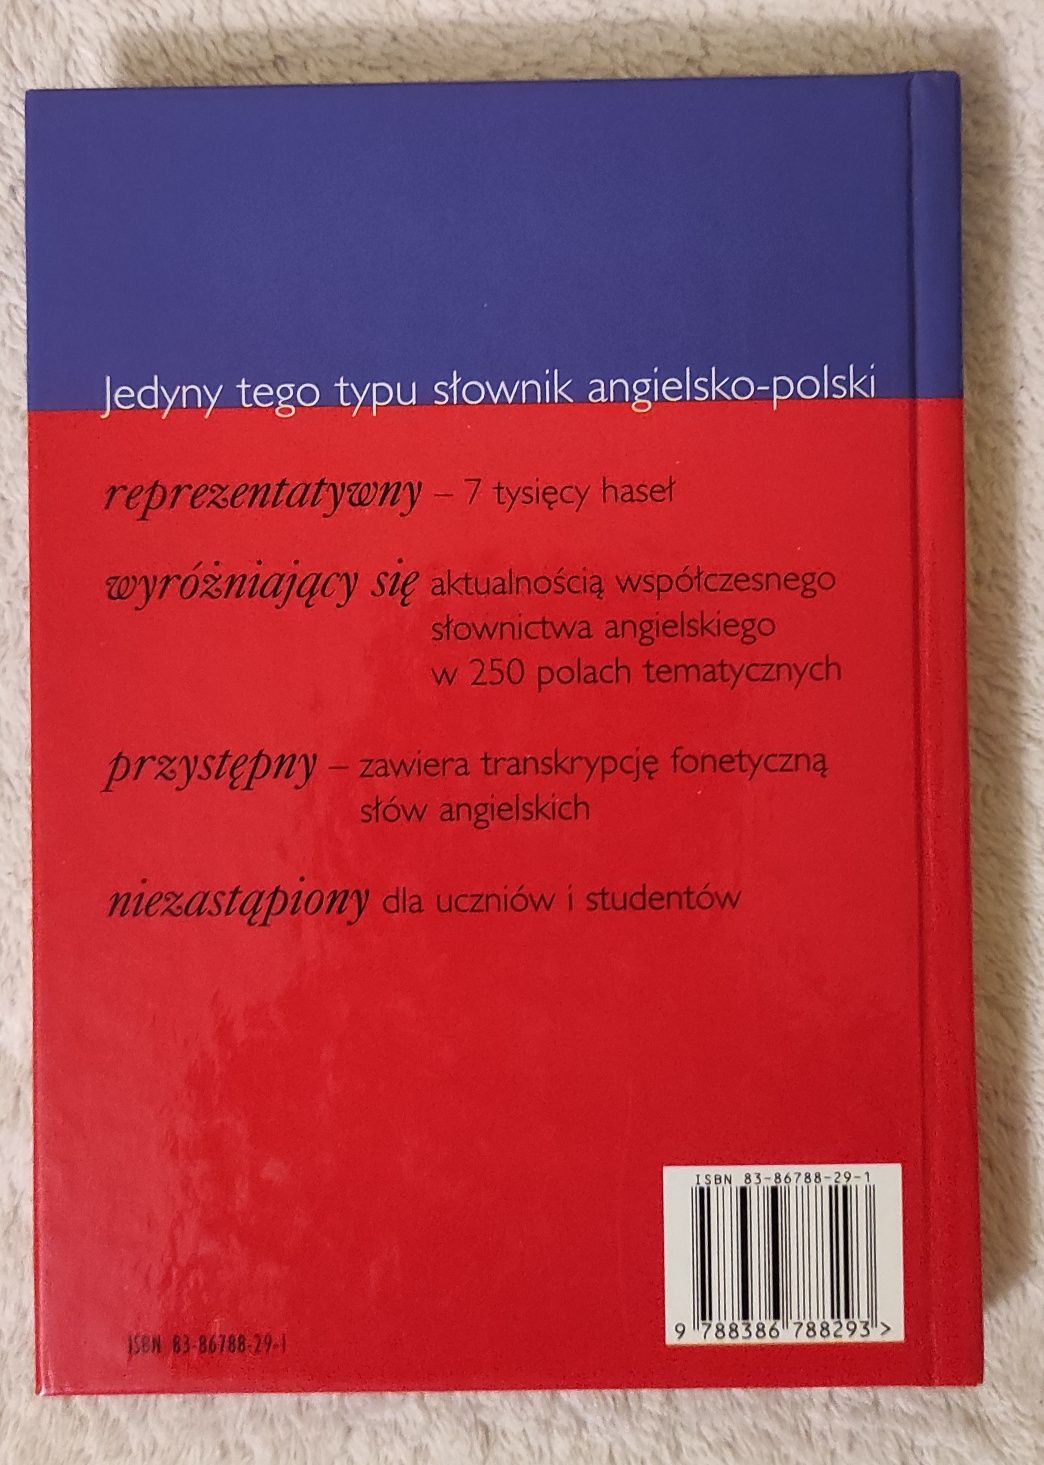 słownik tematyczny angielskiego-polski